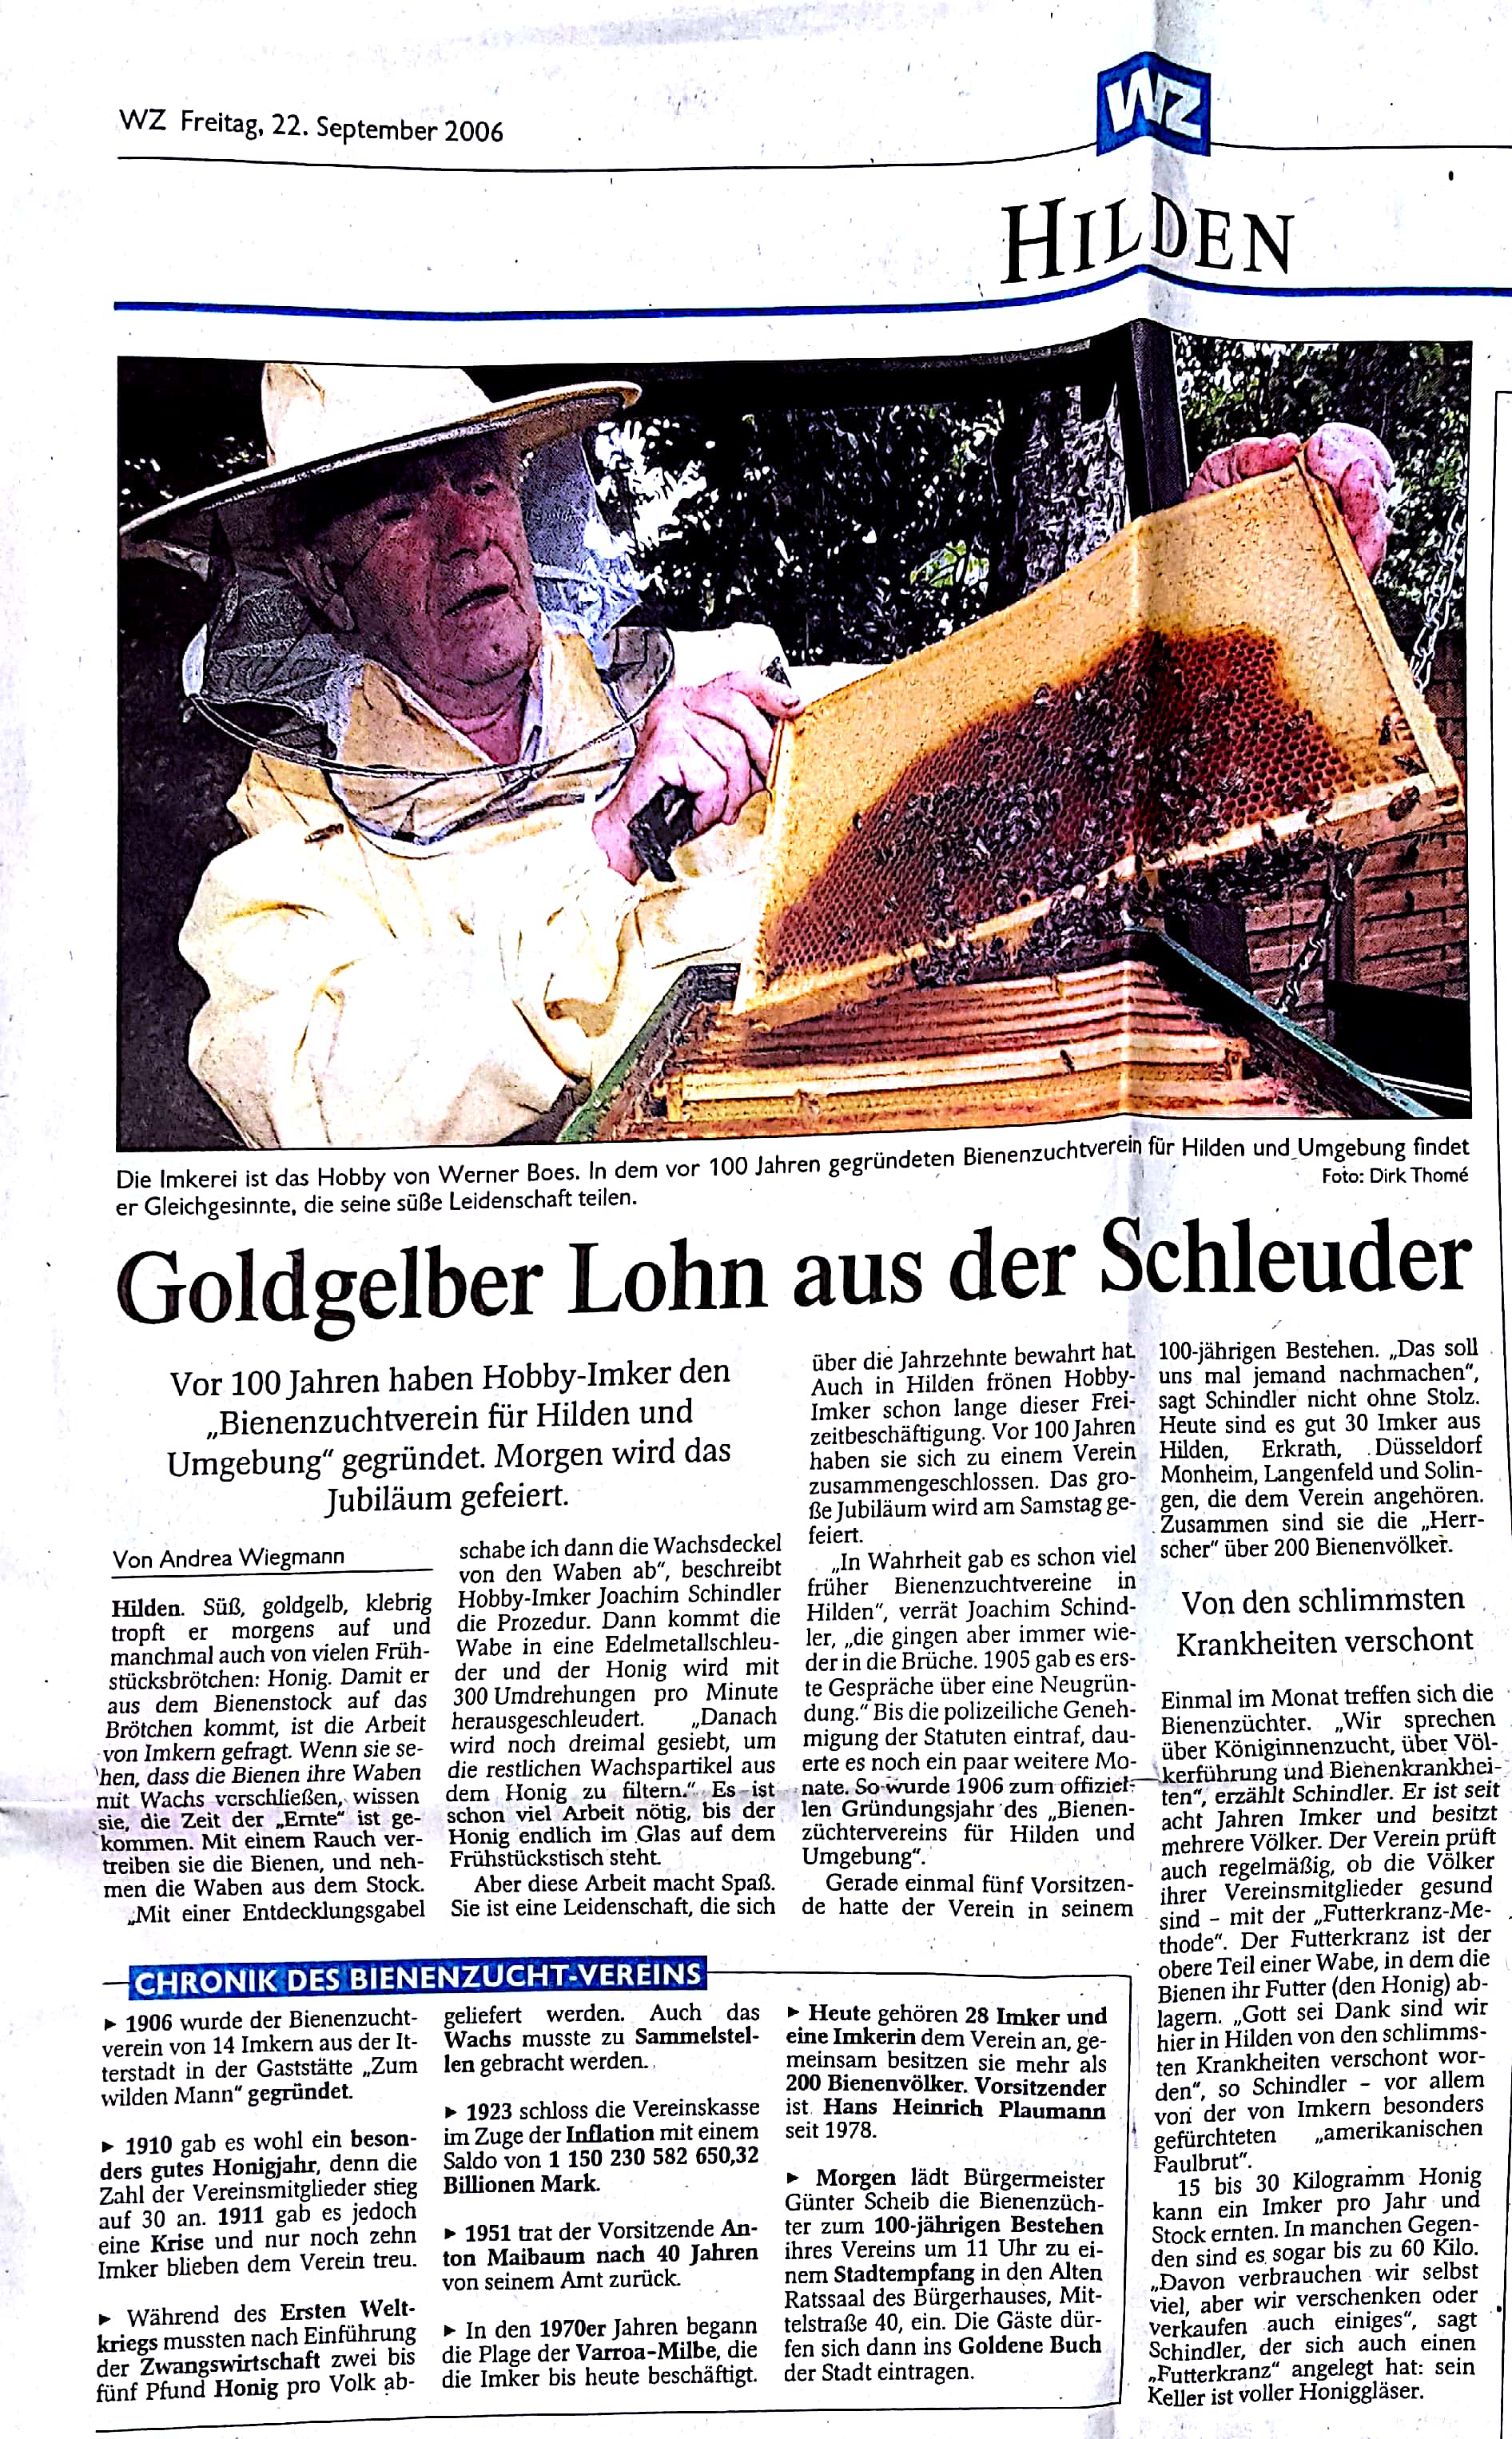 Wochenzeitung Hilden vom 22.09.2006